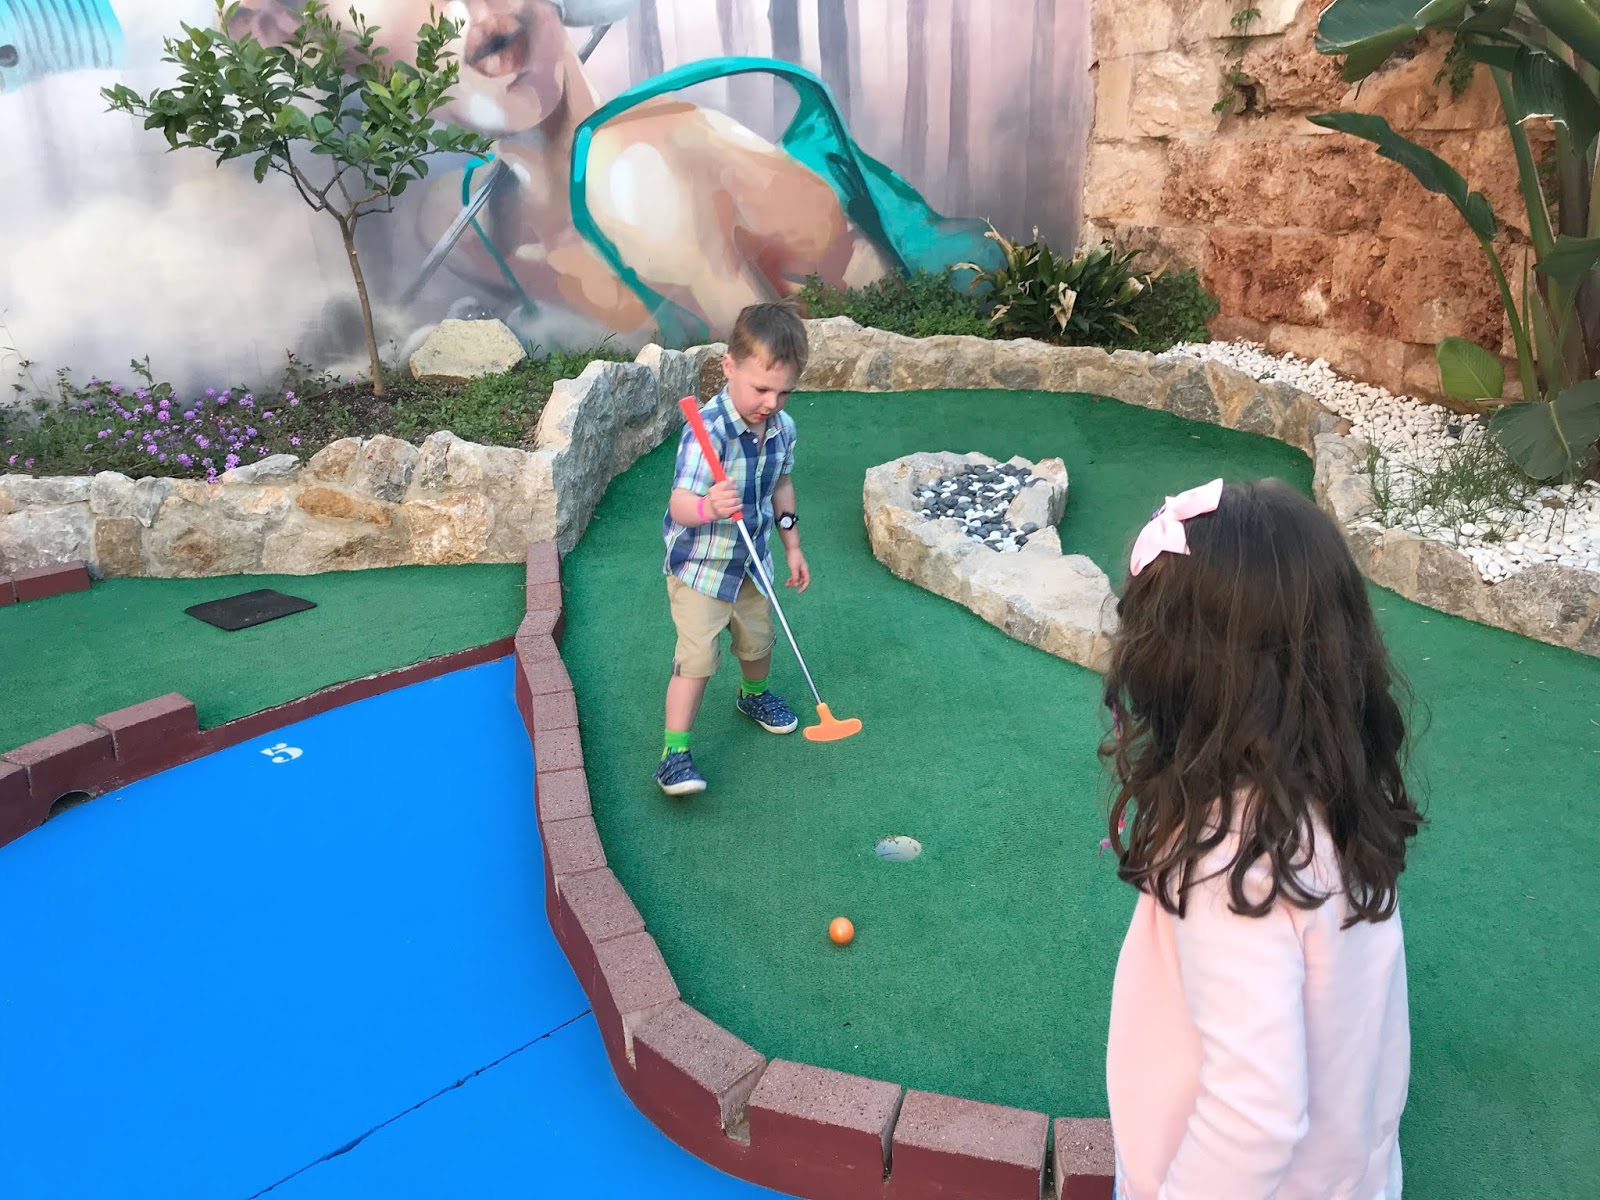 lærer økse klasselærer Things To Do In Santa Ponsa Majorca With Children | Newcastle Family Life